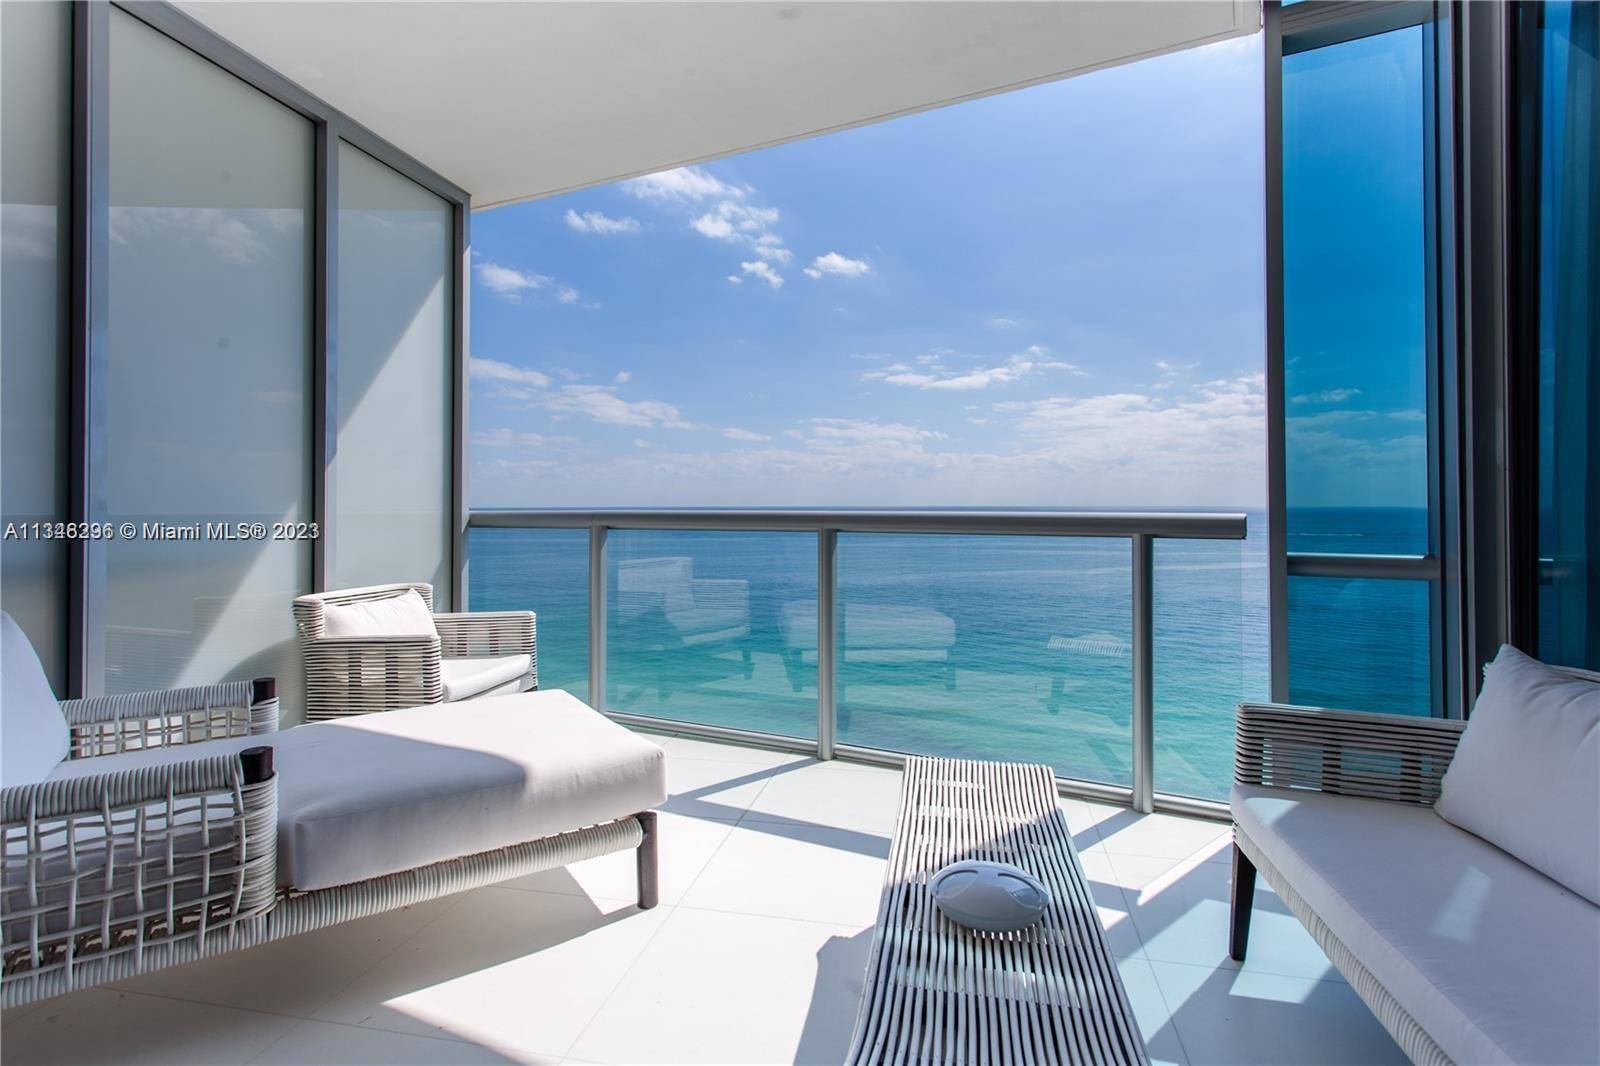 Gorgeous ocean views from this Jade Ocean luxury residence.